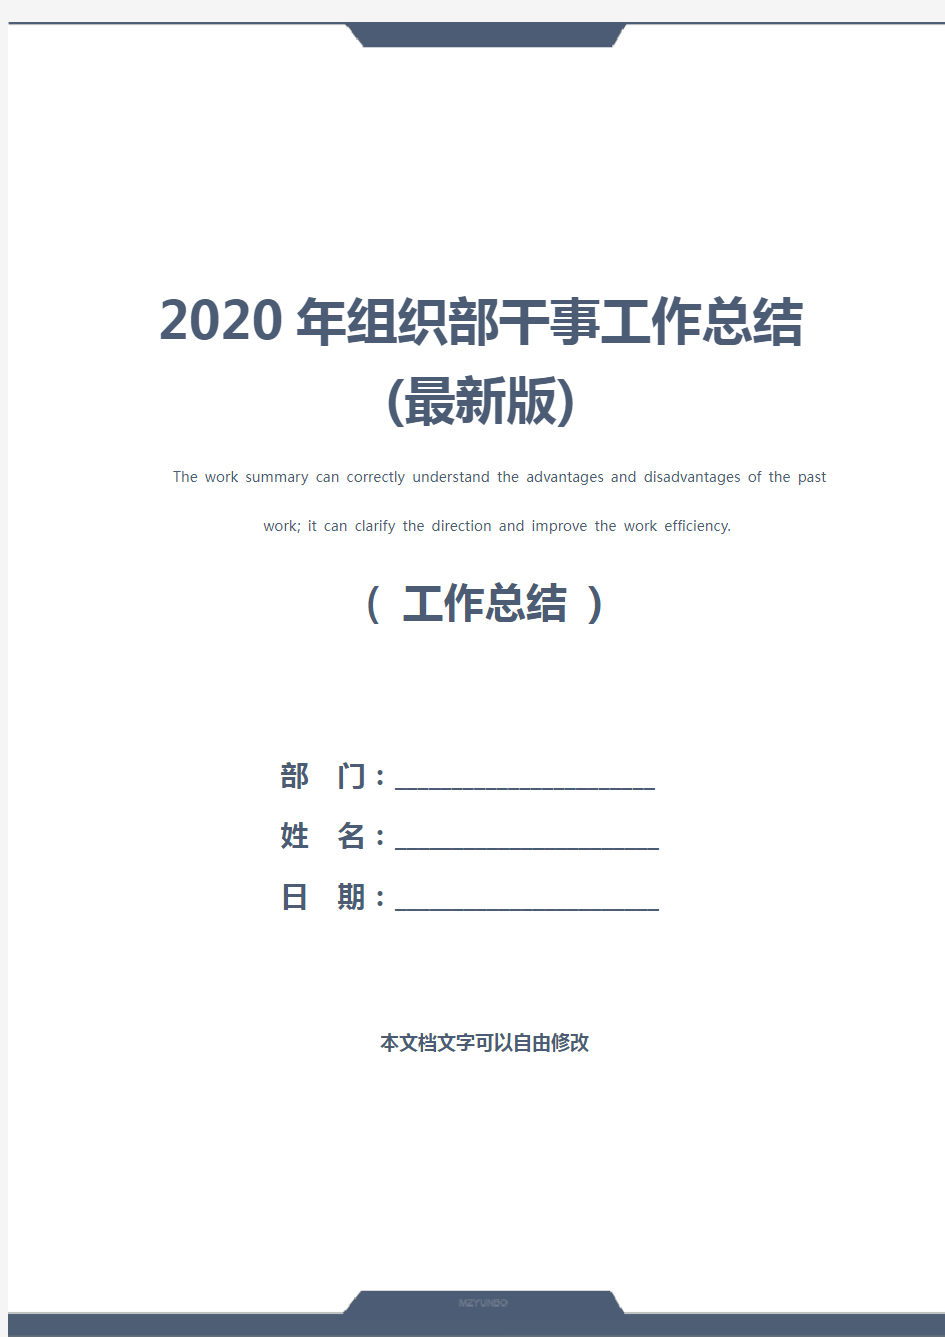 2020年组织部干事工作总结(最新版)